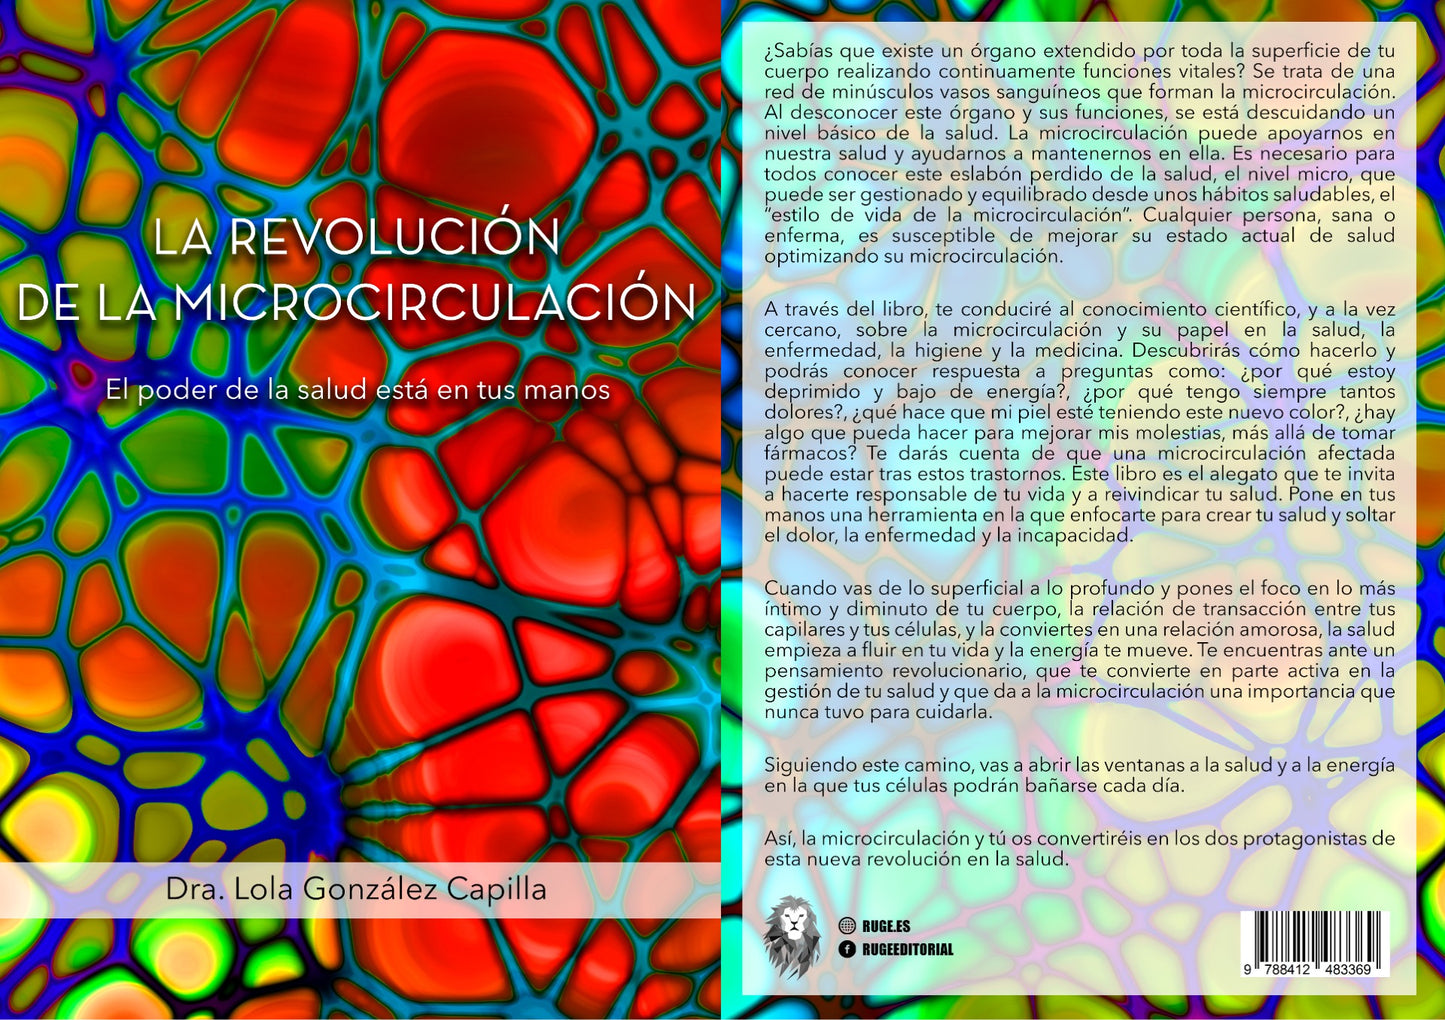 Libro "La revolución de la Microcirculación"